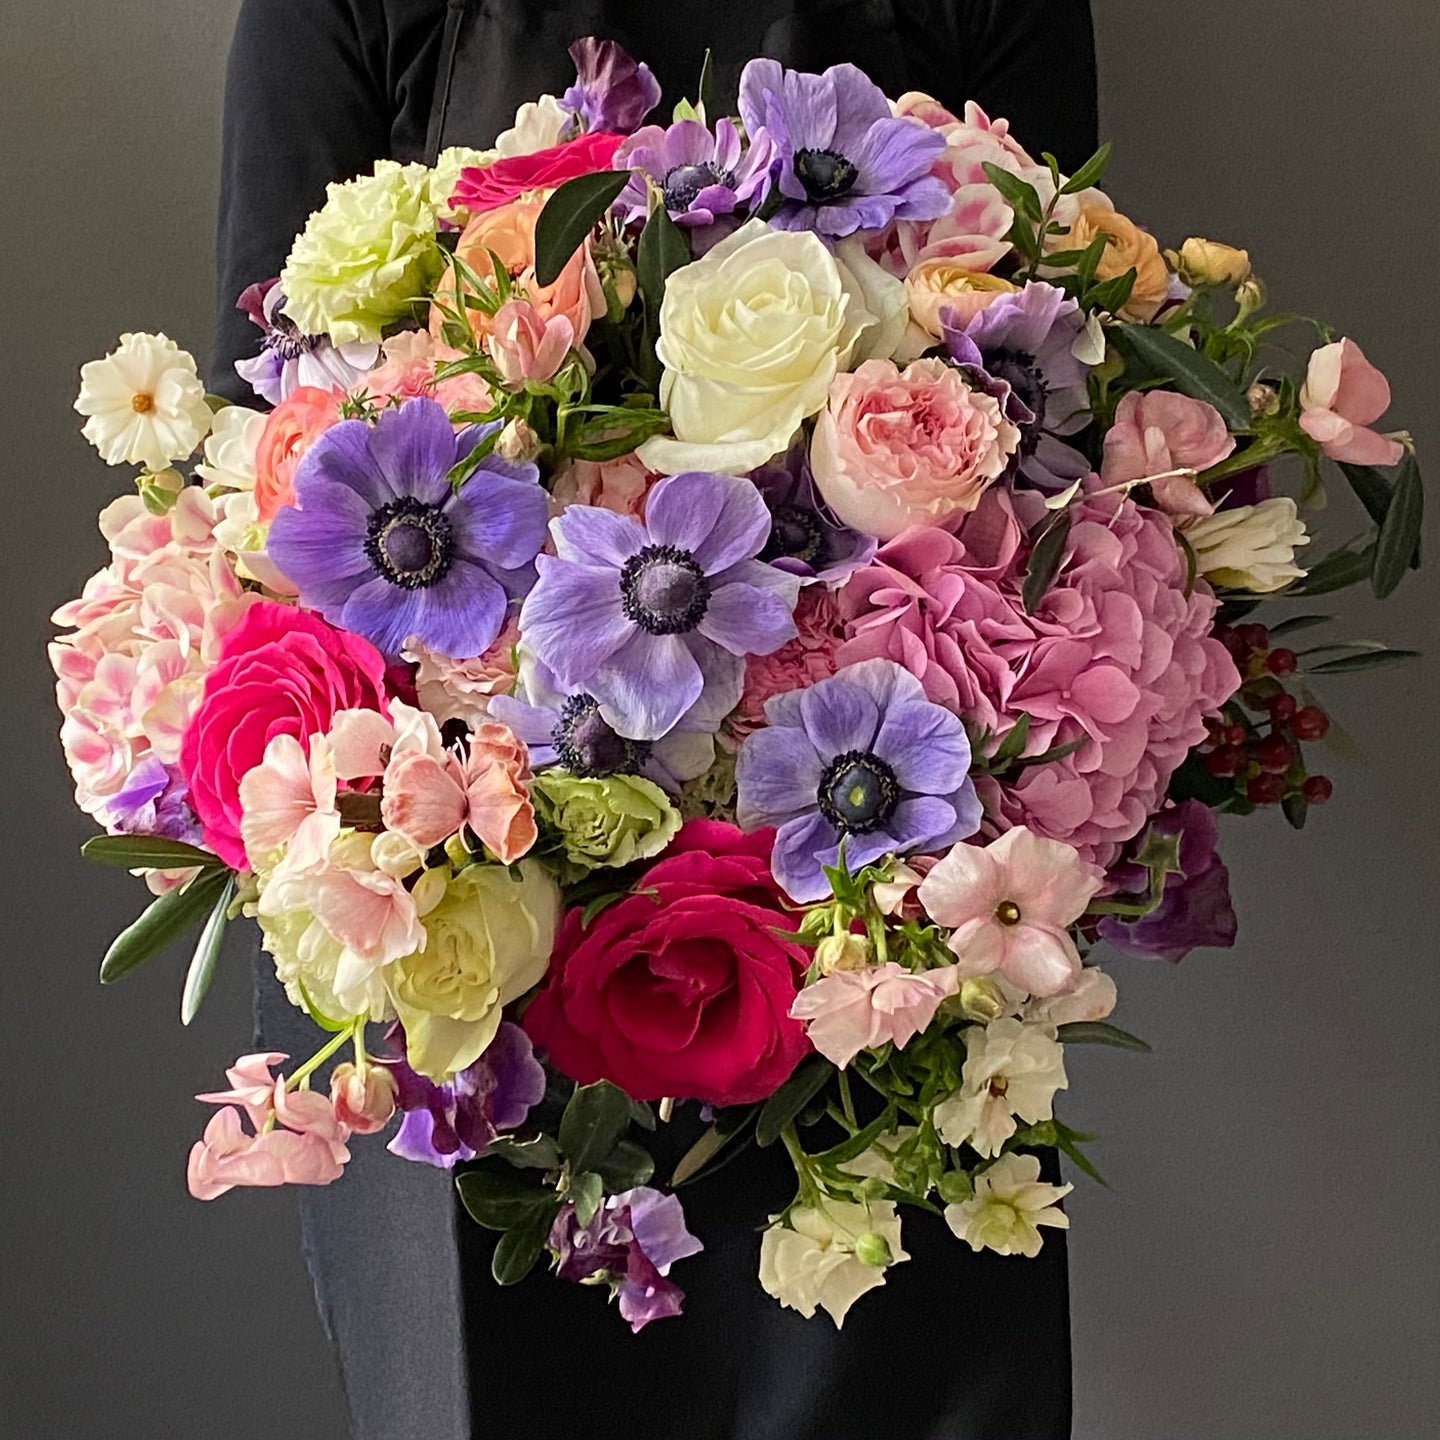 The tri-colour bouquet